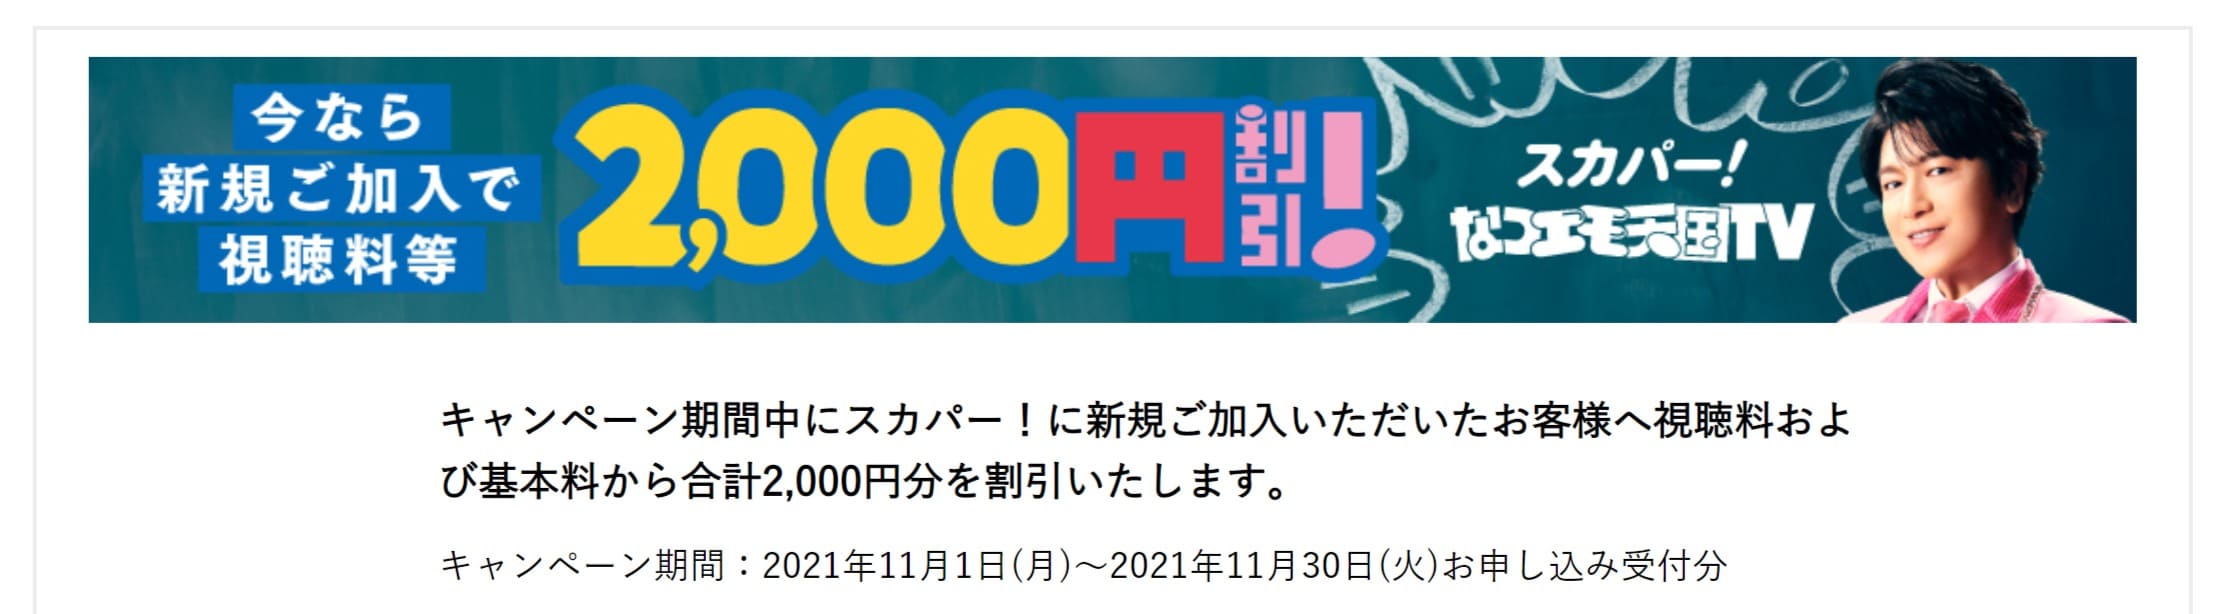 スカパー2021年11月の2000円割引キャンペーン画像